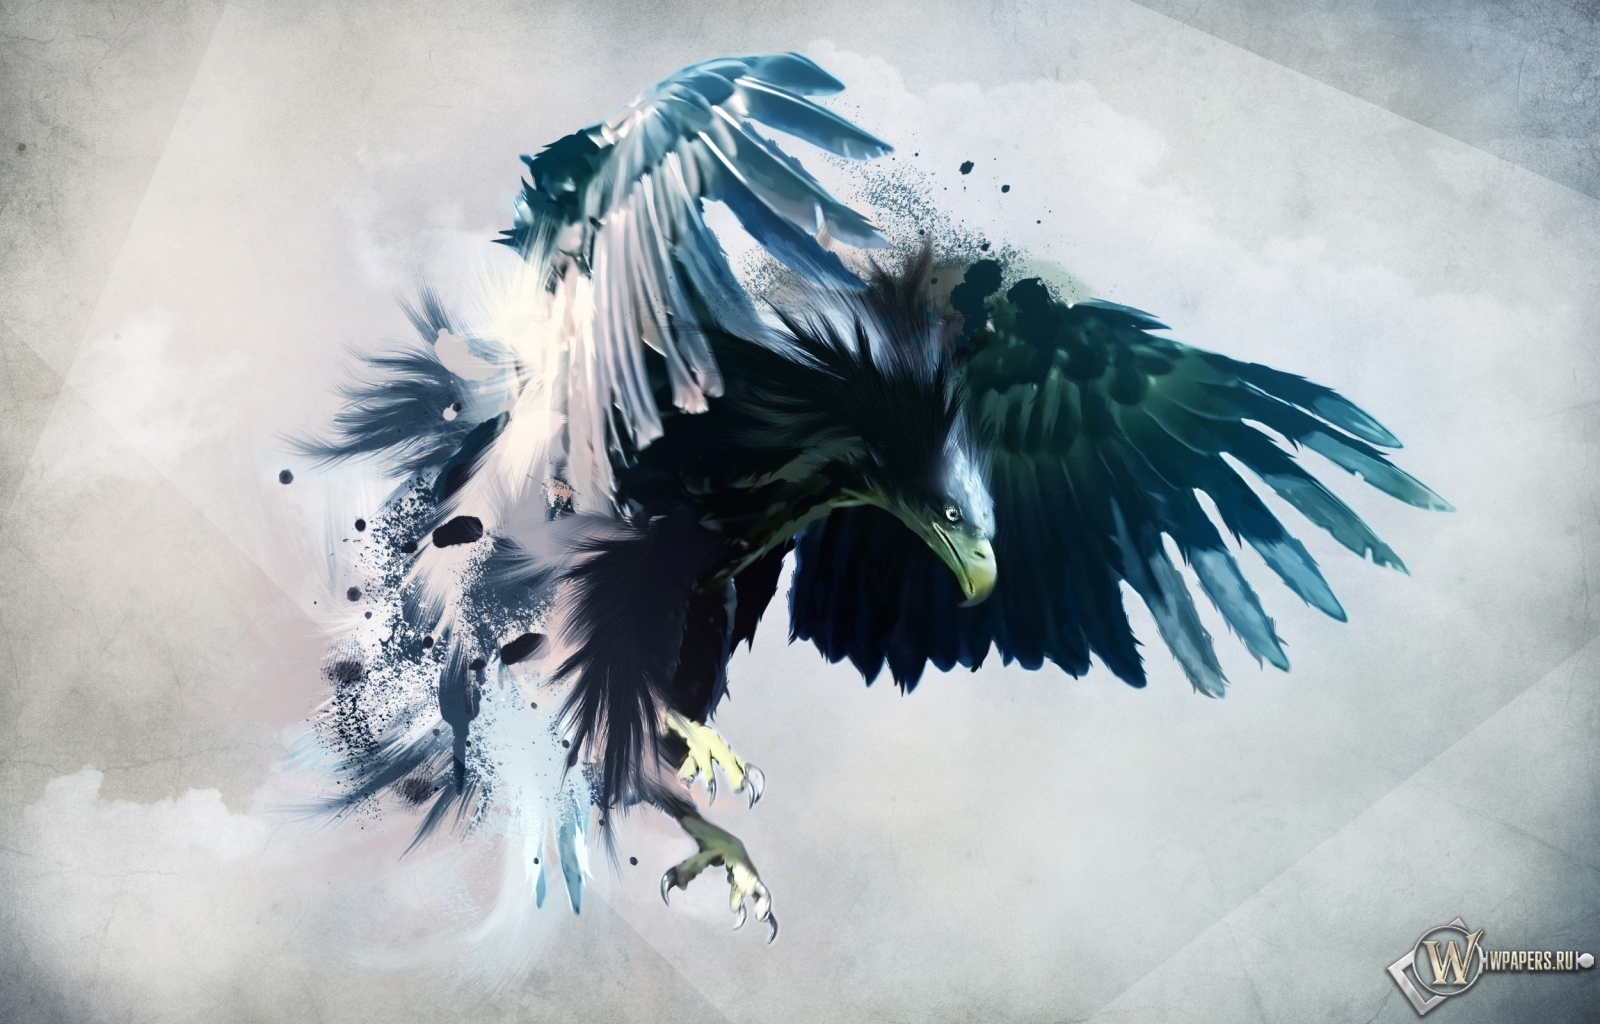 Artistic eagle 1600x1024